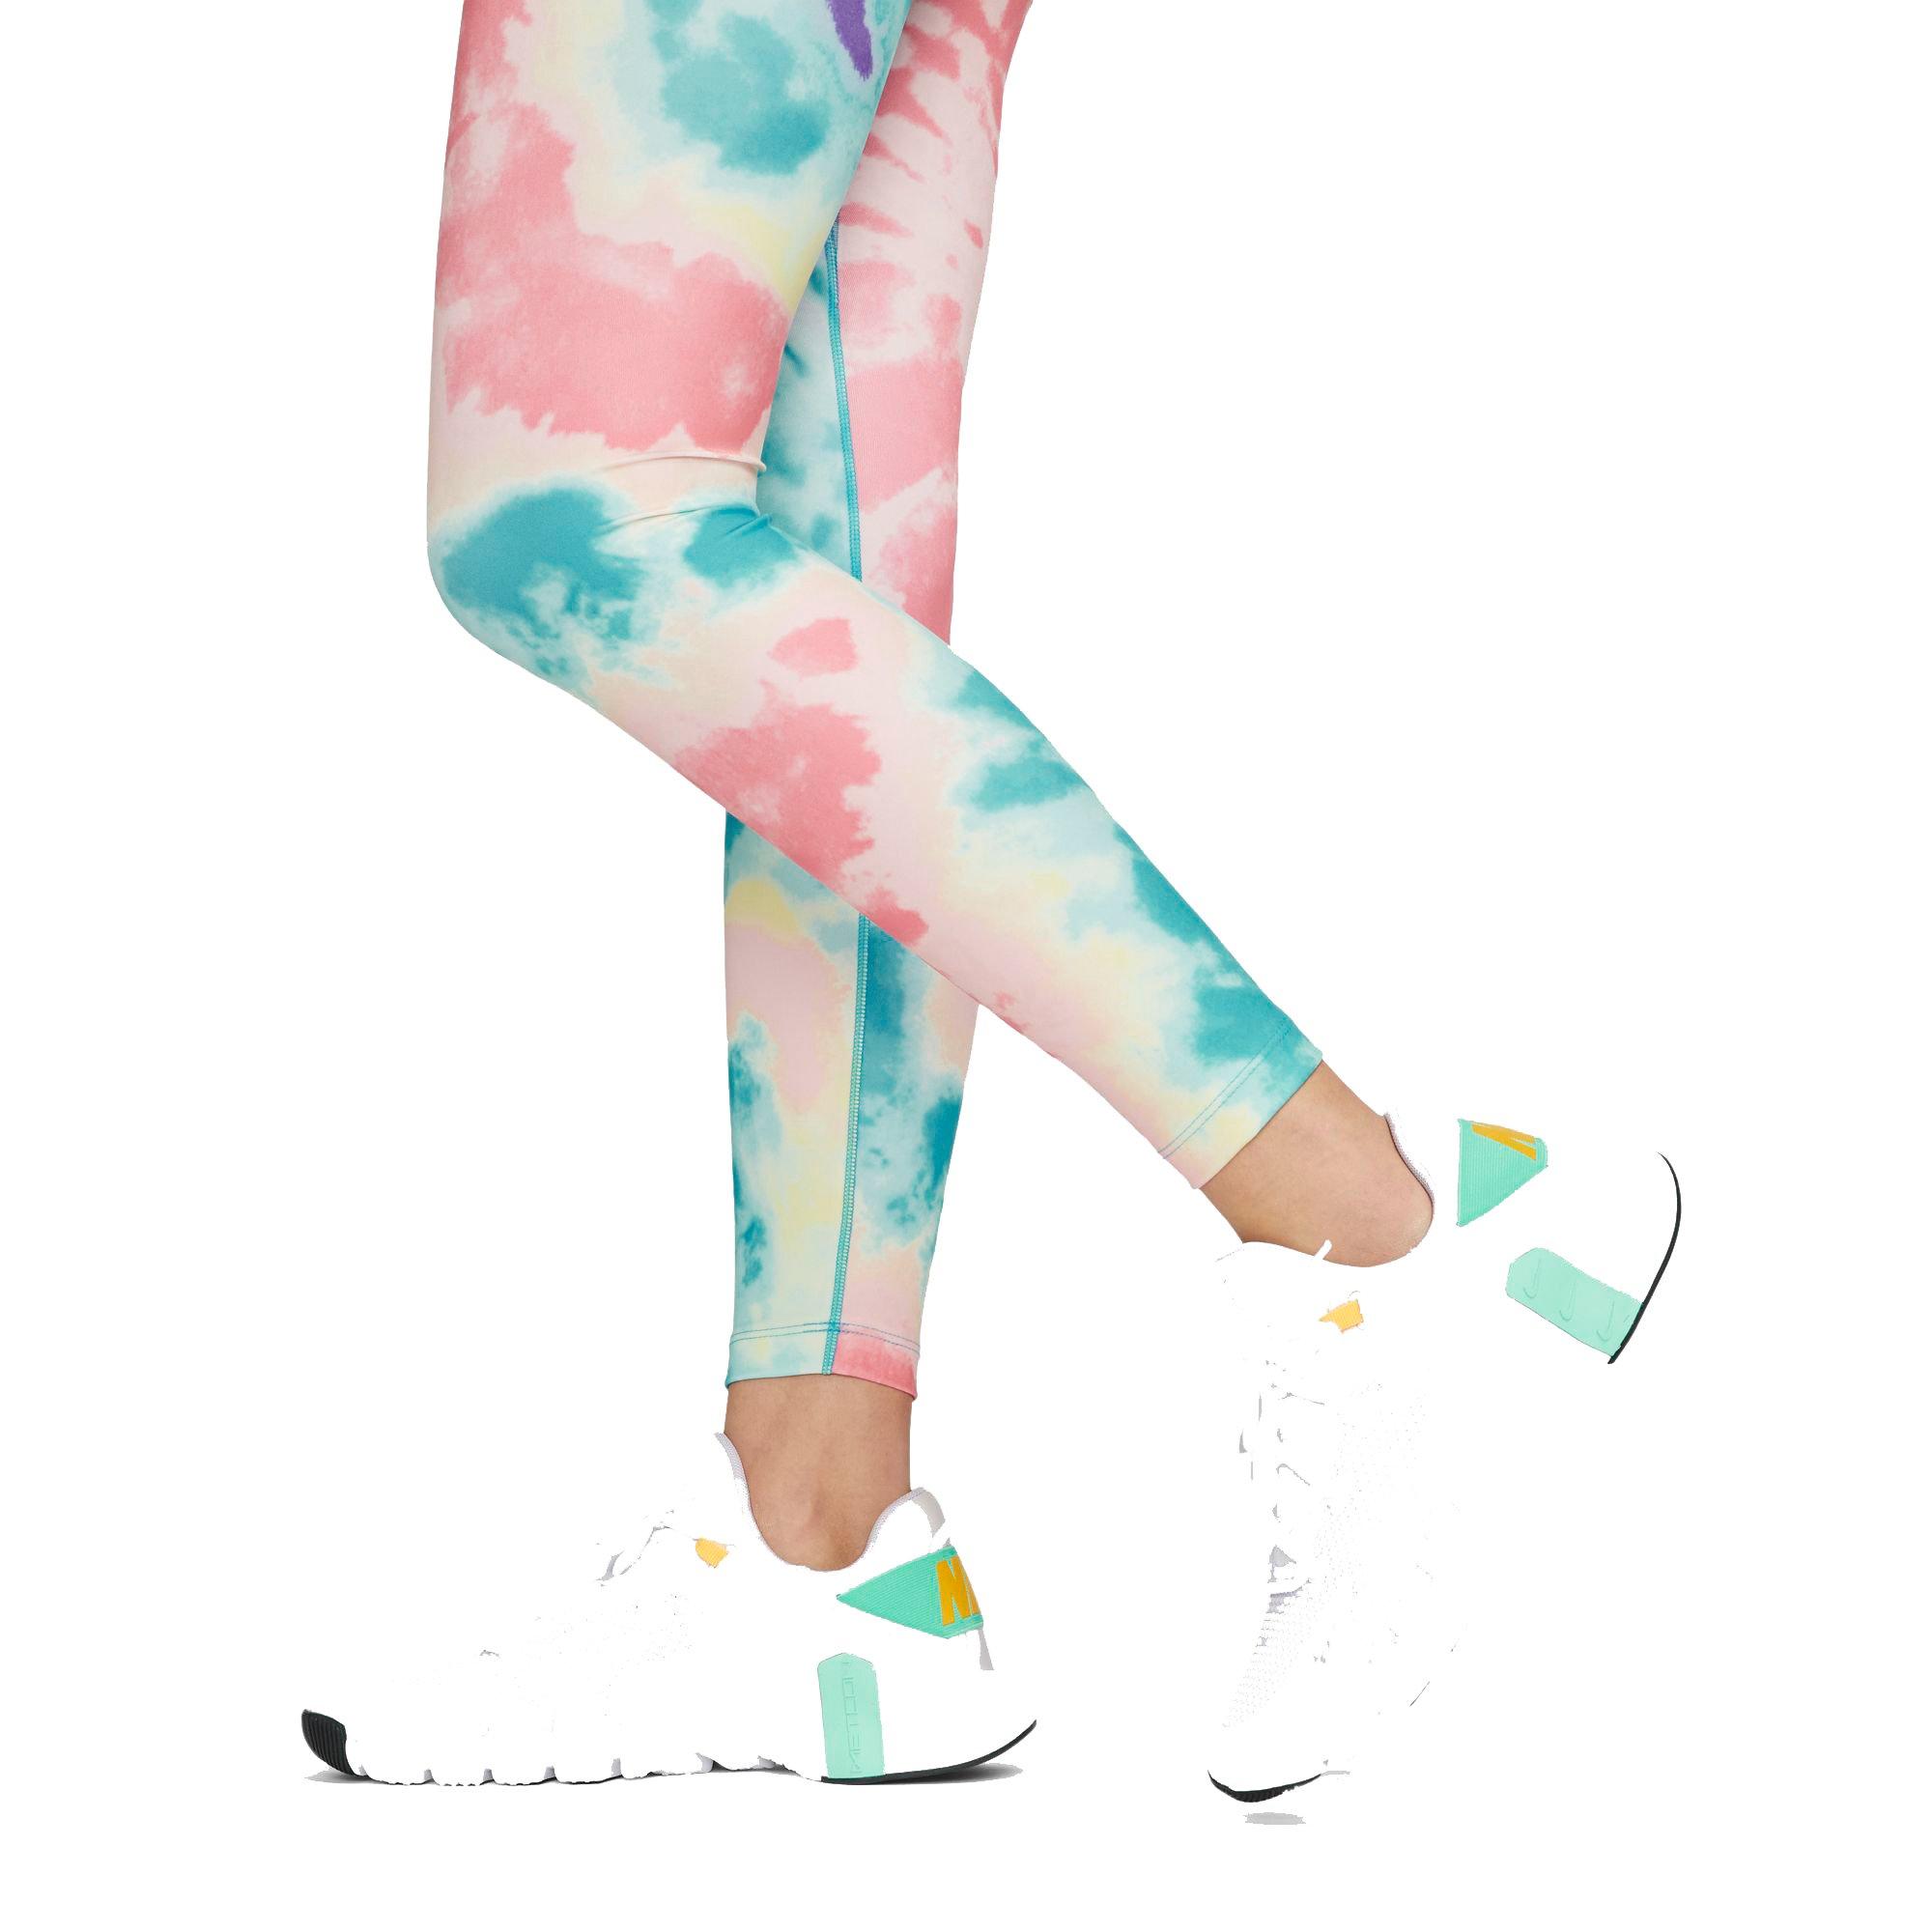 Nike One Women's Dri-Fit Mid Rise 7/8 Tie-Dye Leggings, Light Dew